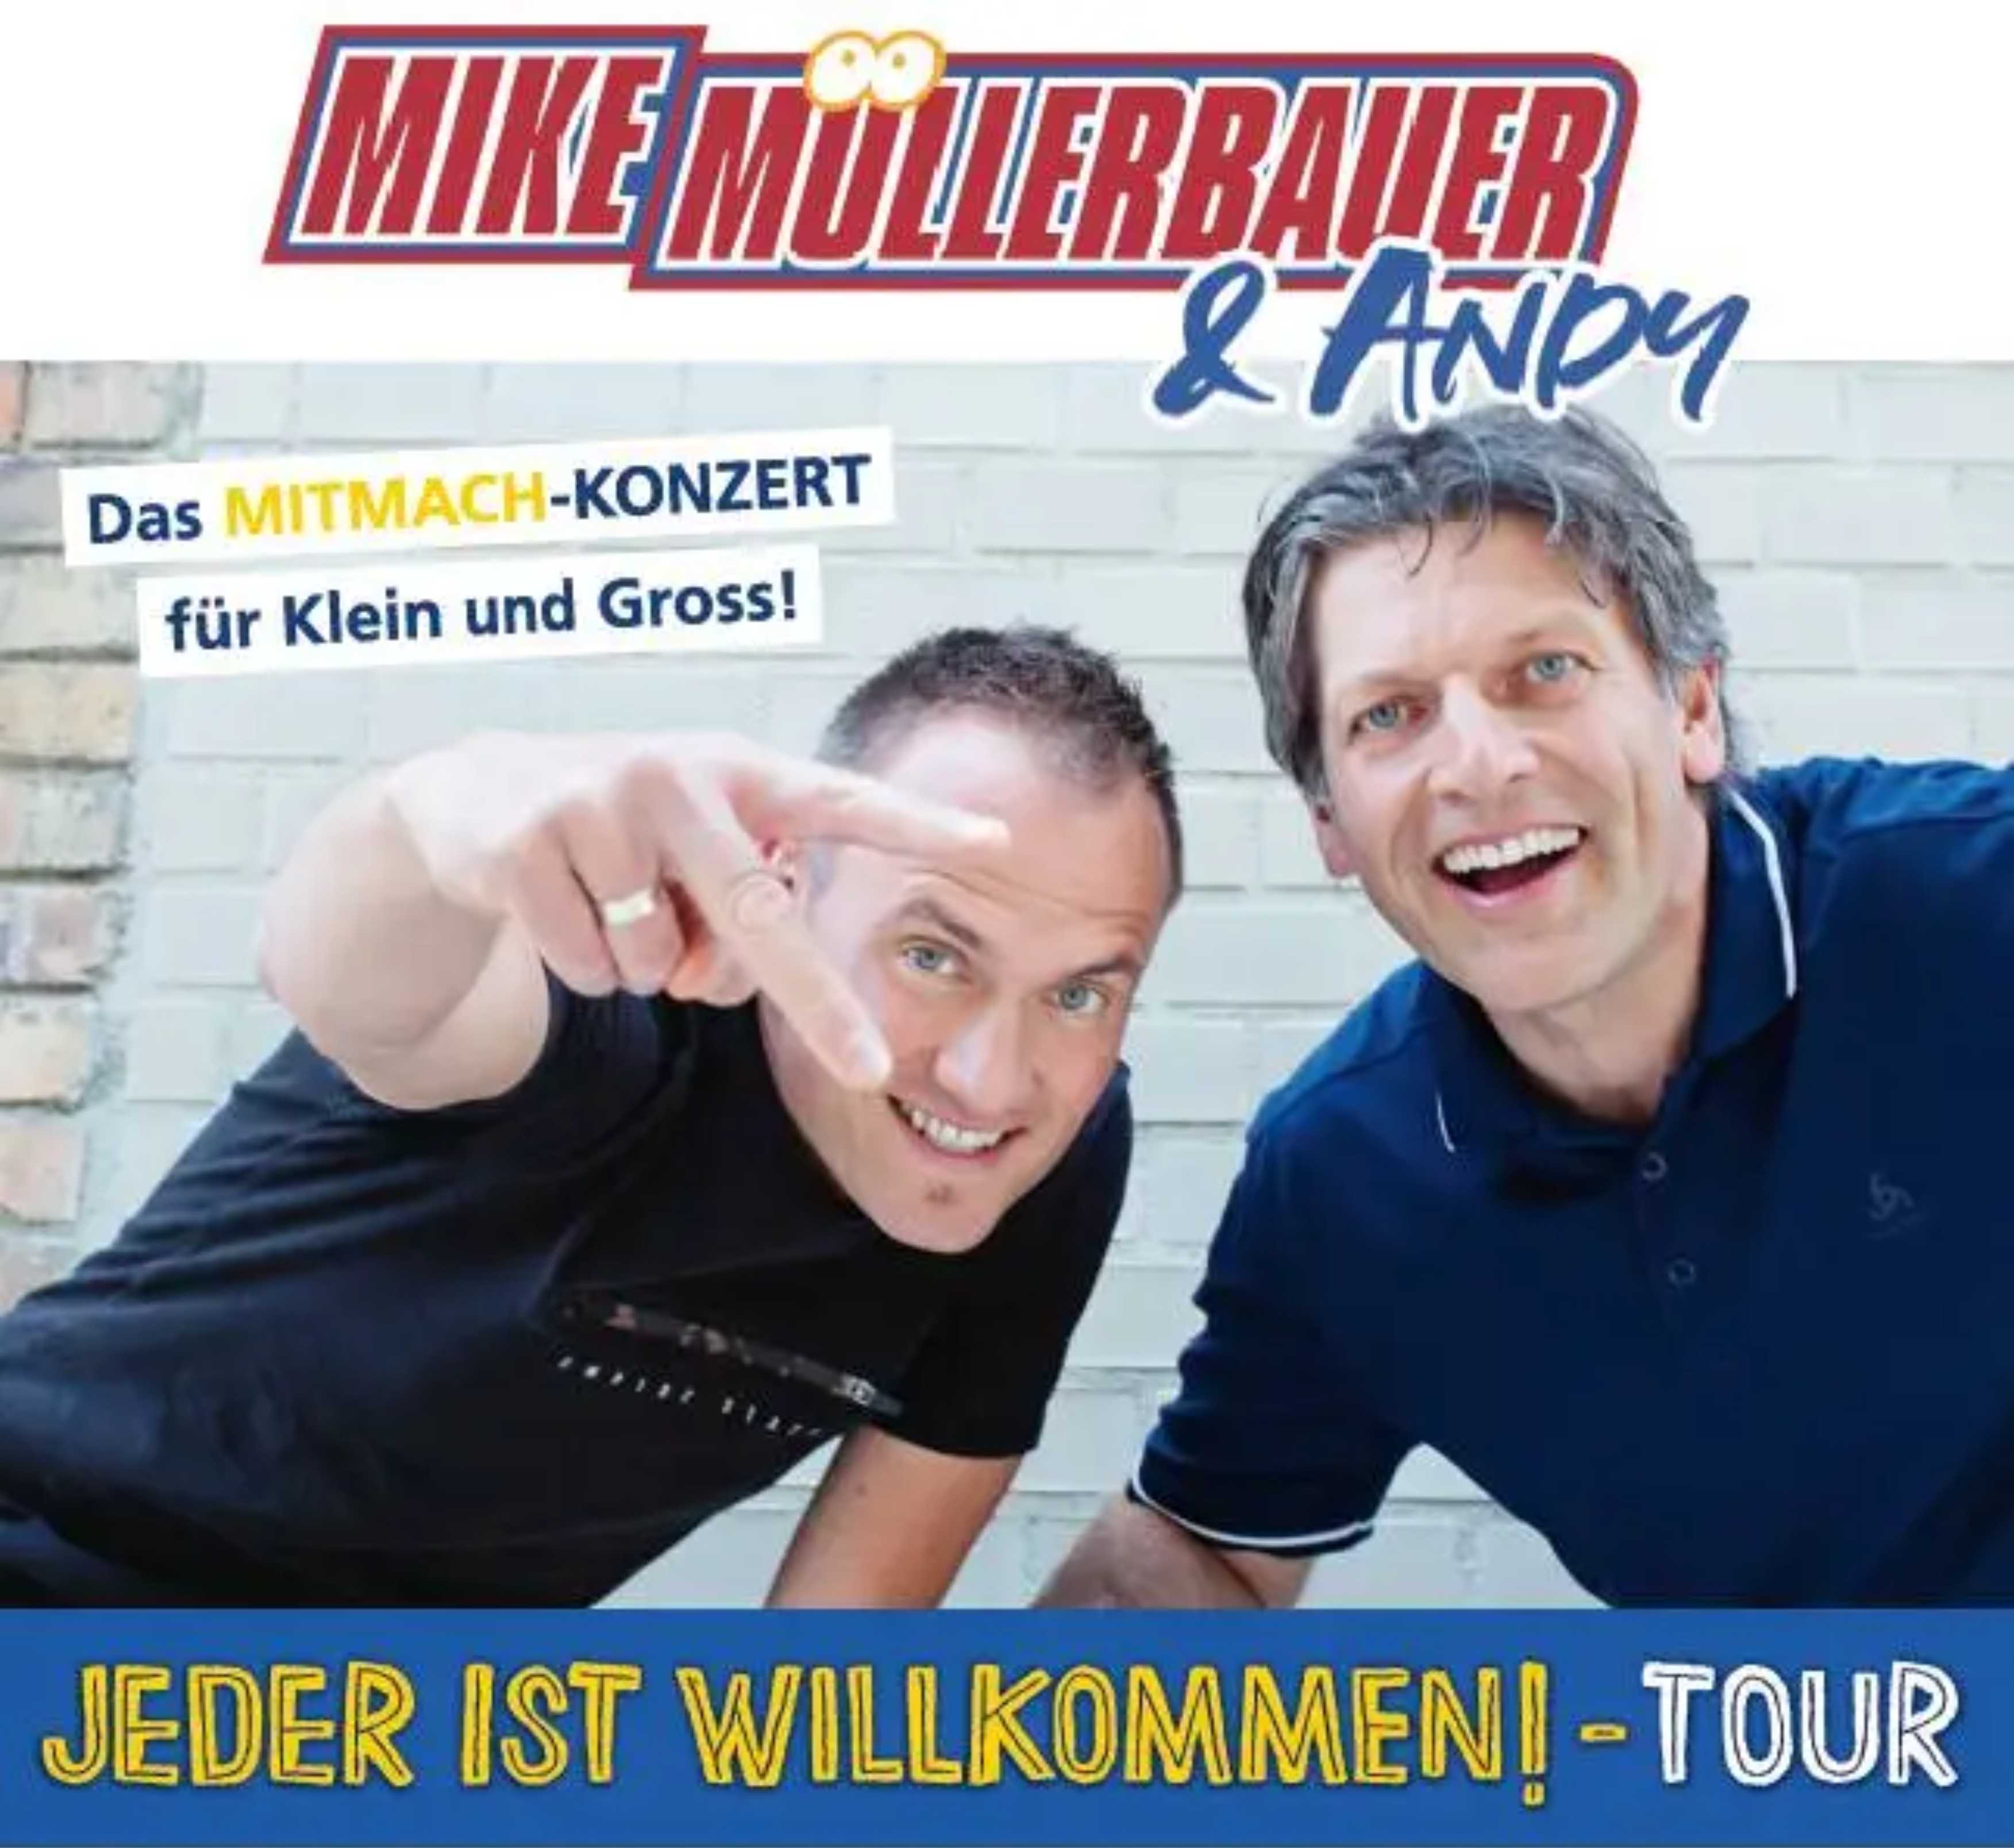 Mike Müllerbauer – Familien-Mitmachkonzert „Jeder ist Willkommen!“